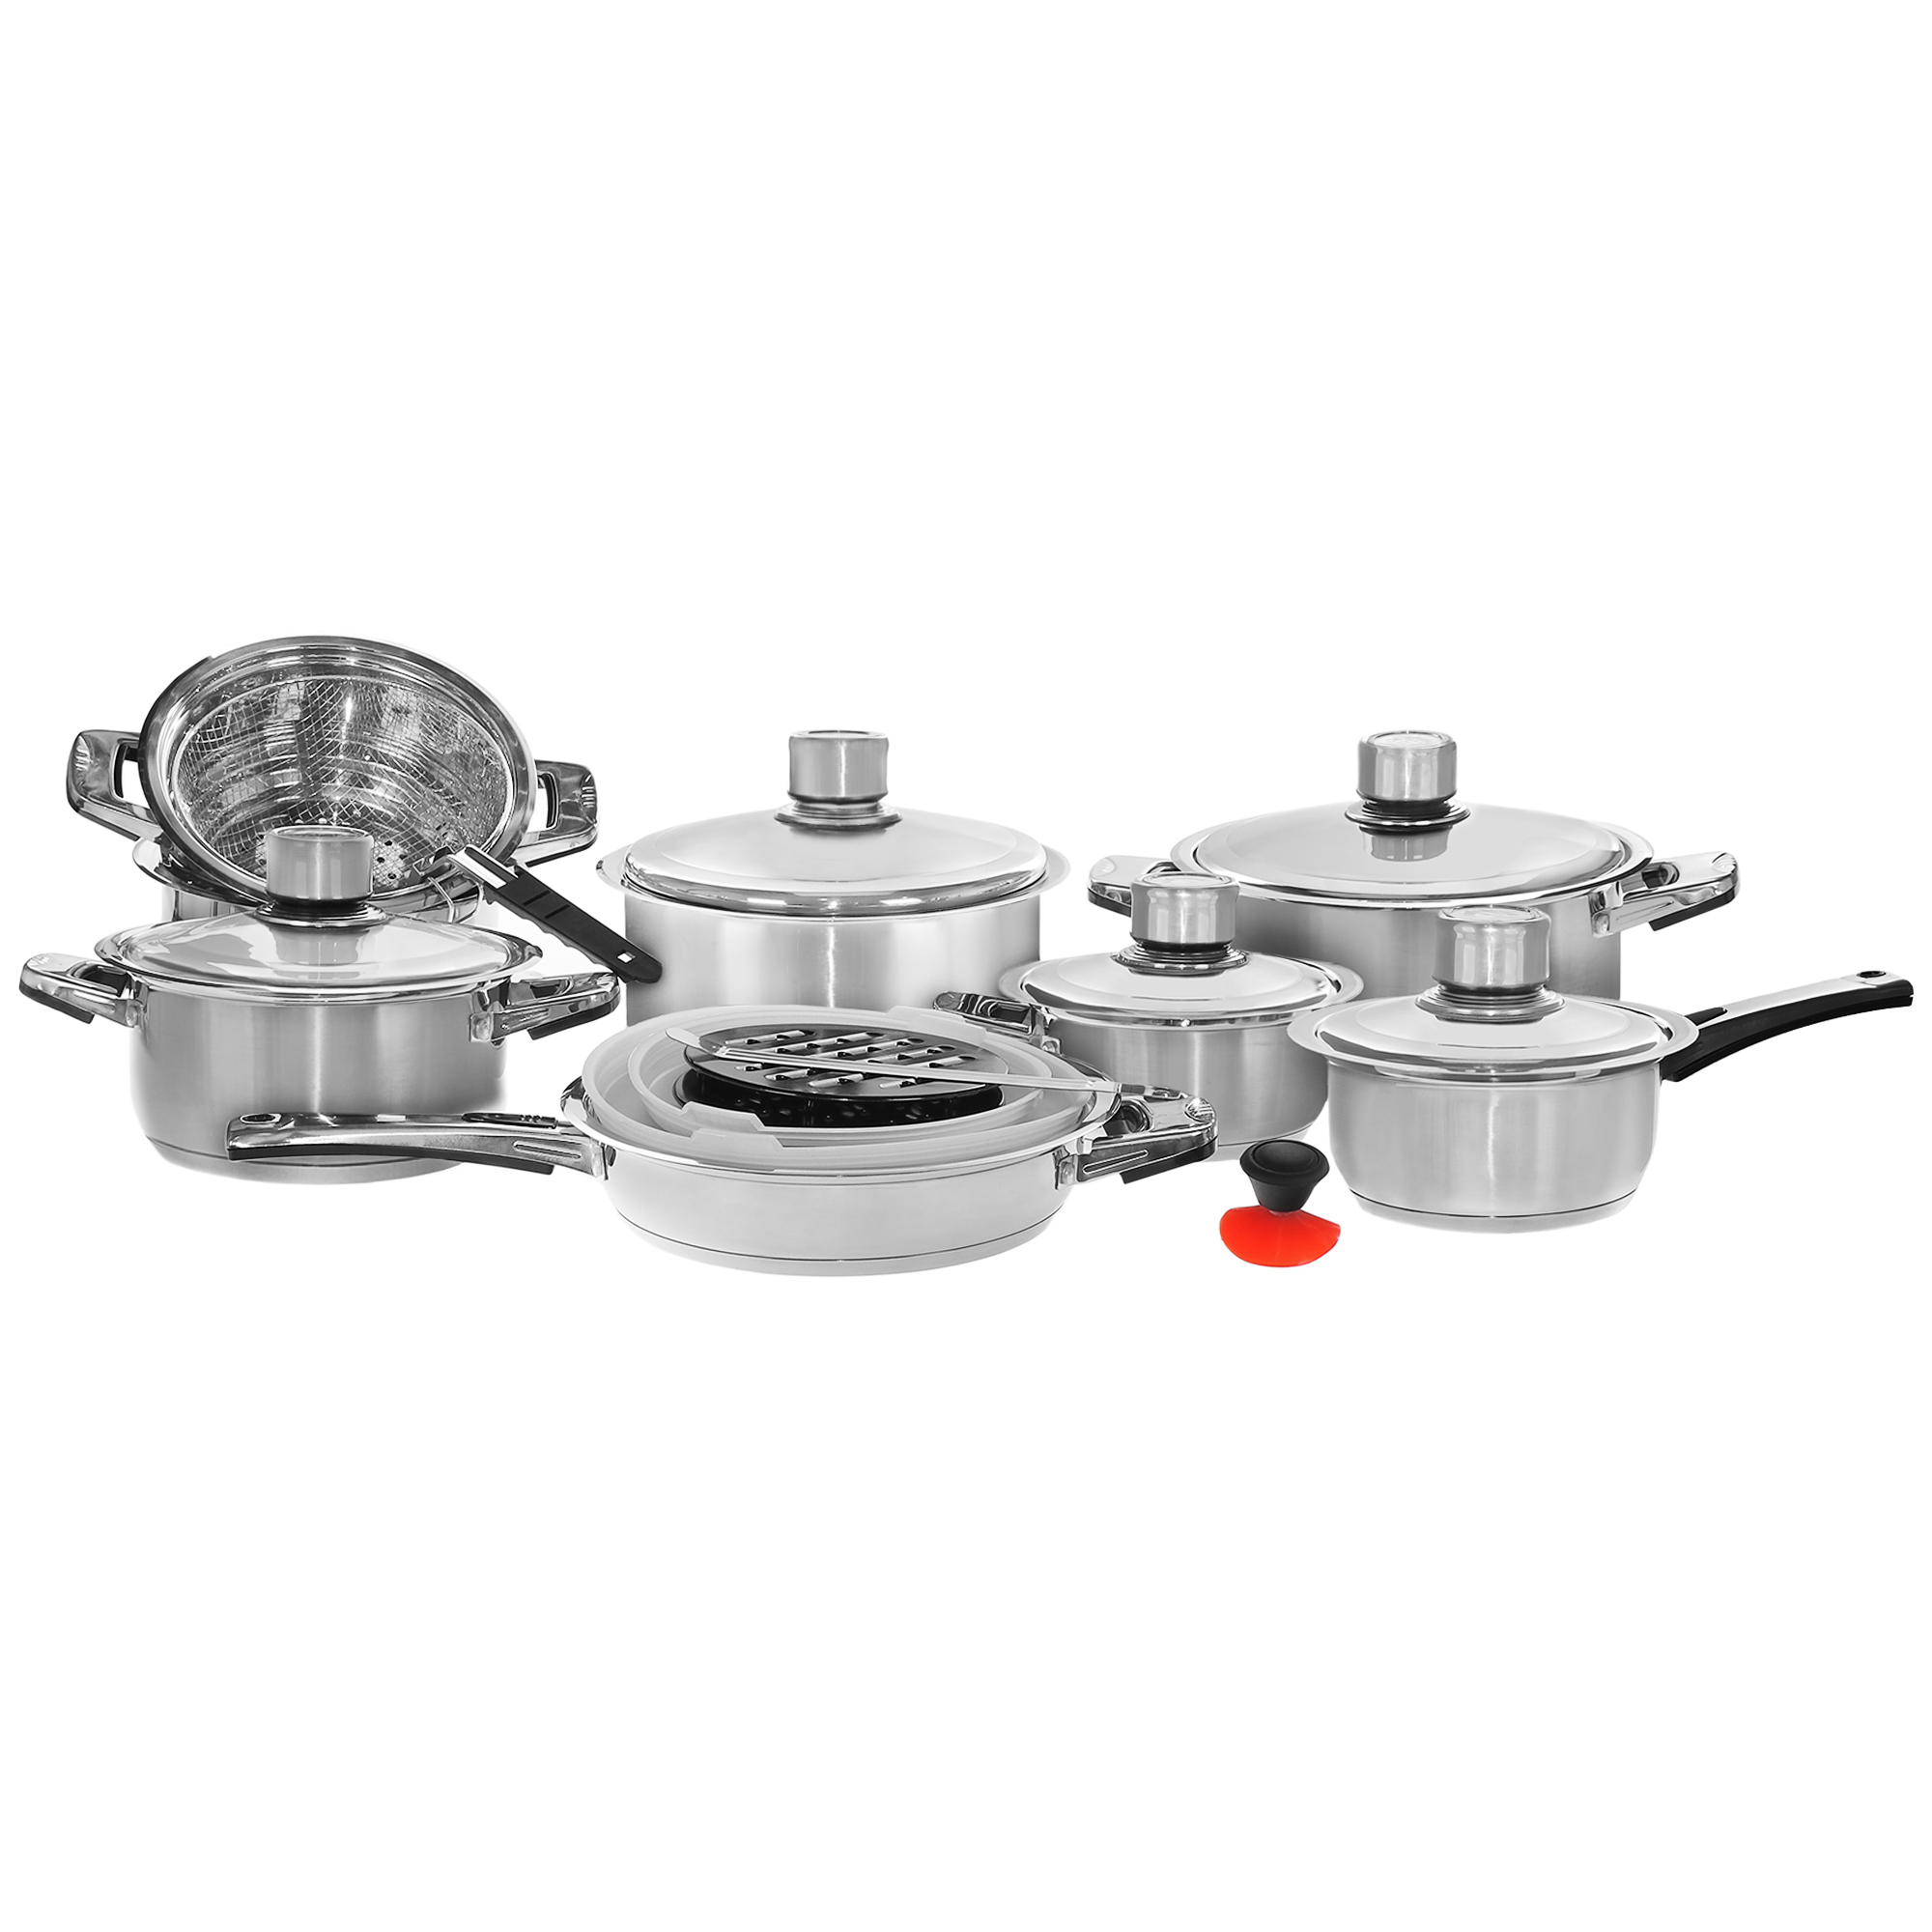 Набор посуды Vantage сталь нержавеющая 23 предмета набор кругов шлифовальных kwb 491006 сетка 225 мм 80x3 шт 120x2 шт